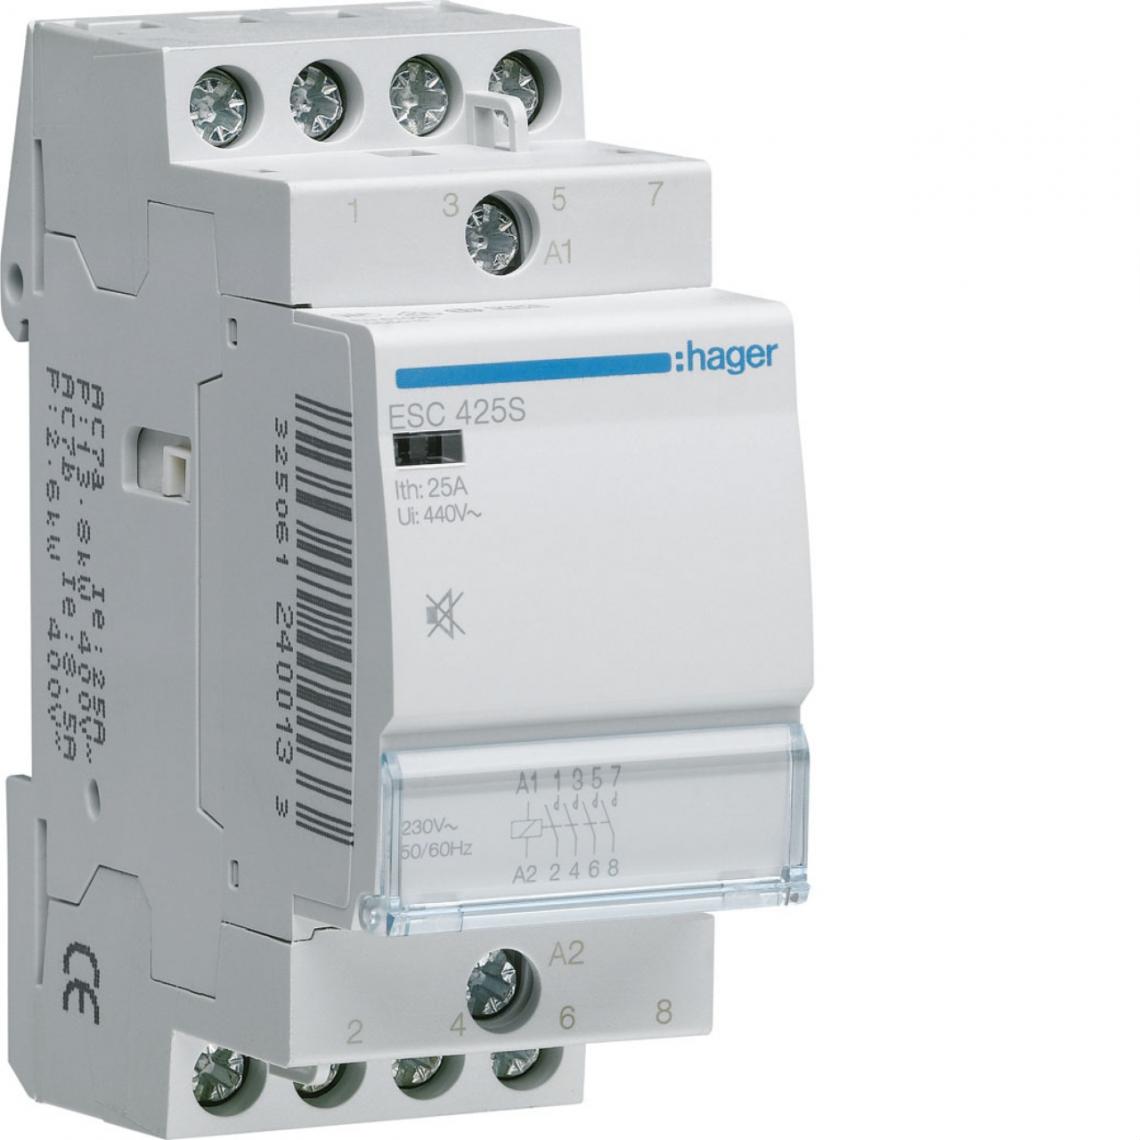 Hager - contacteur modulaire silencieux - 25a - 4 contacts nf - 230v - hager esc425s - Télérupteurs, minuteries et horloges